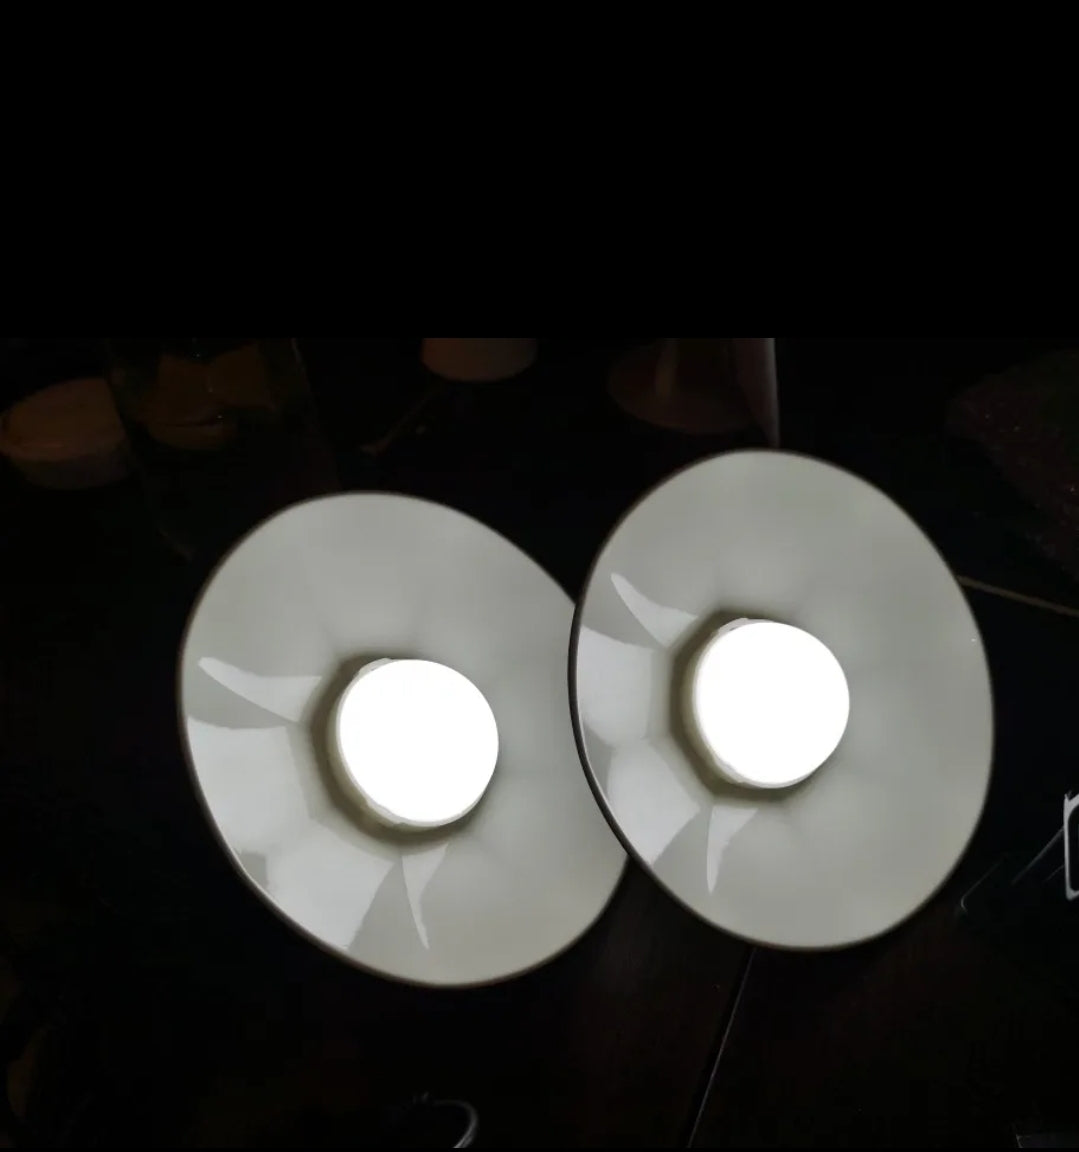 Lampada solare da esterno per interni IP65 luce a LED impermeabile con telecomando